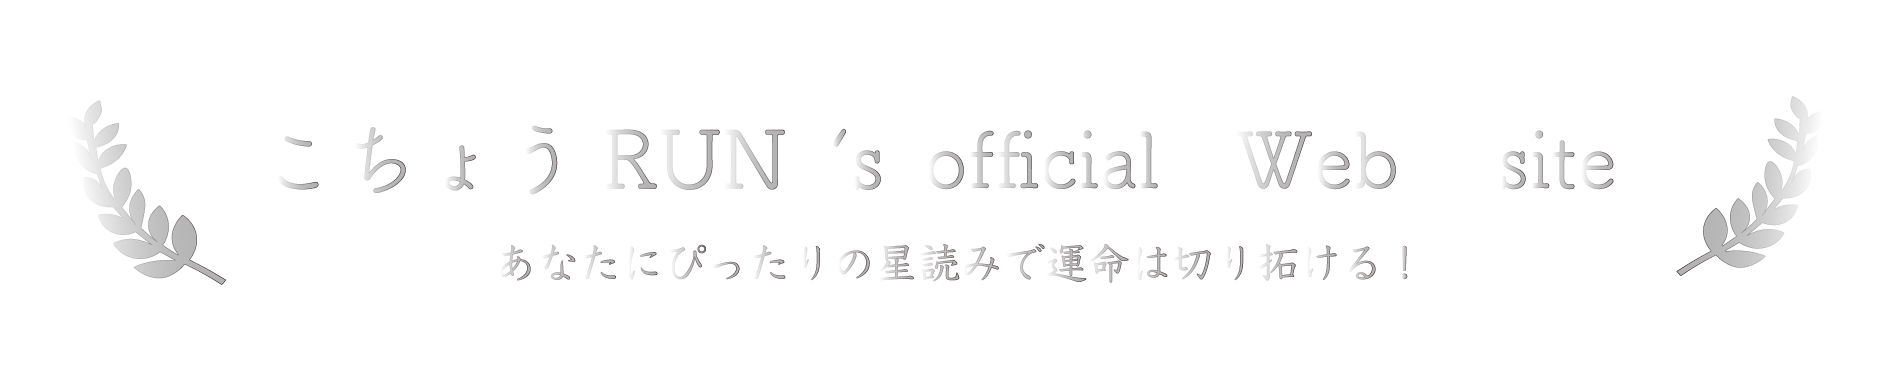 こちょうRUN's official webサイト